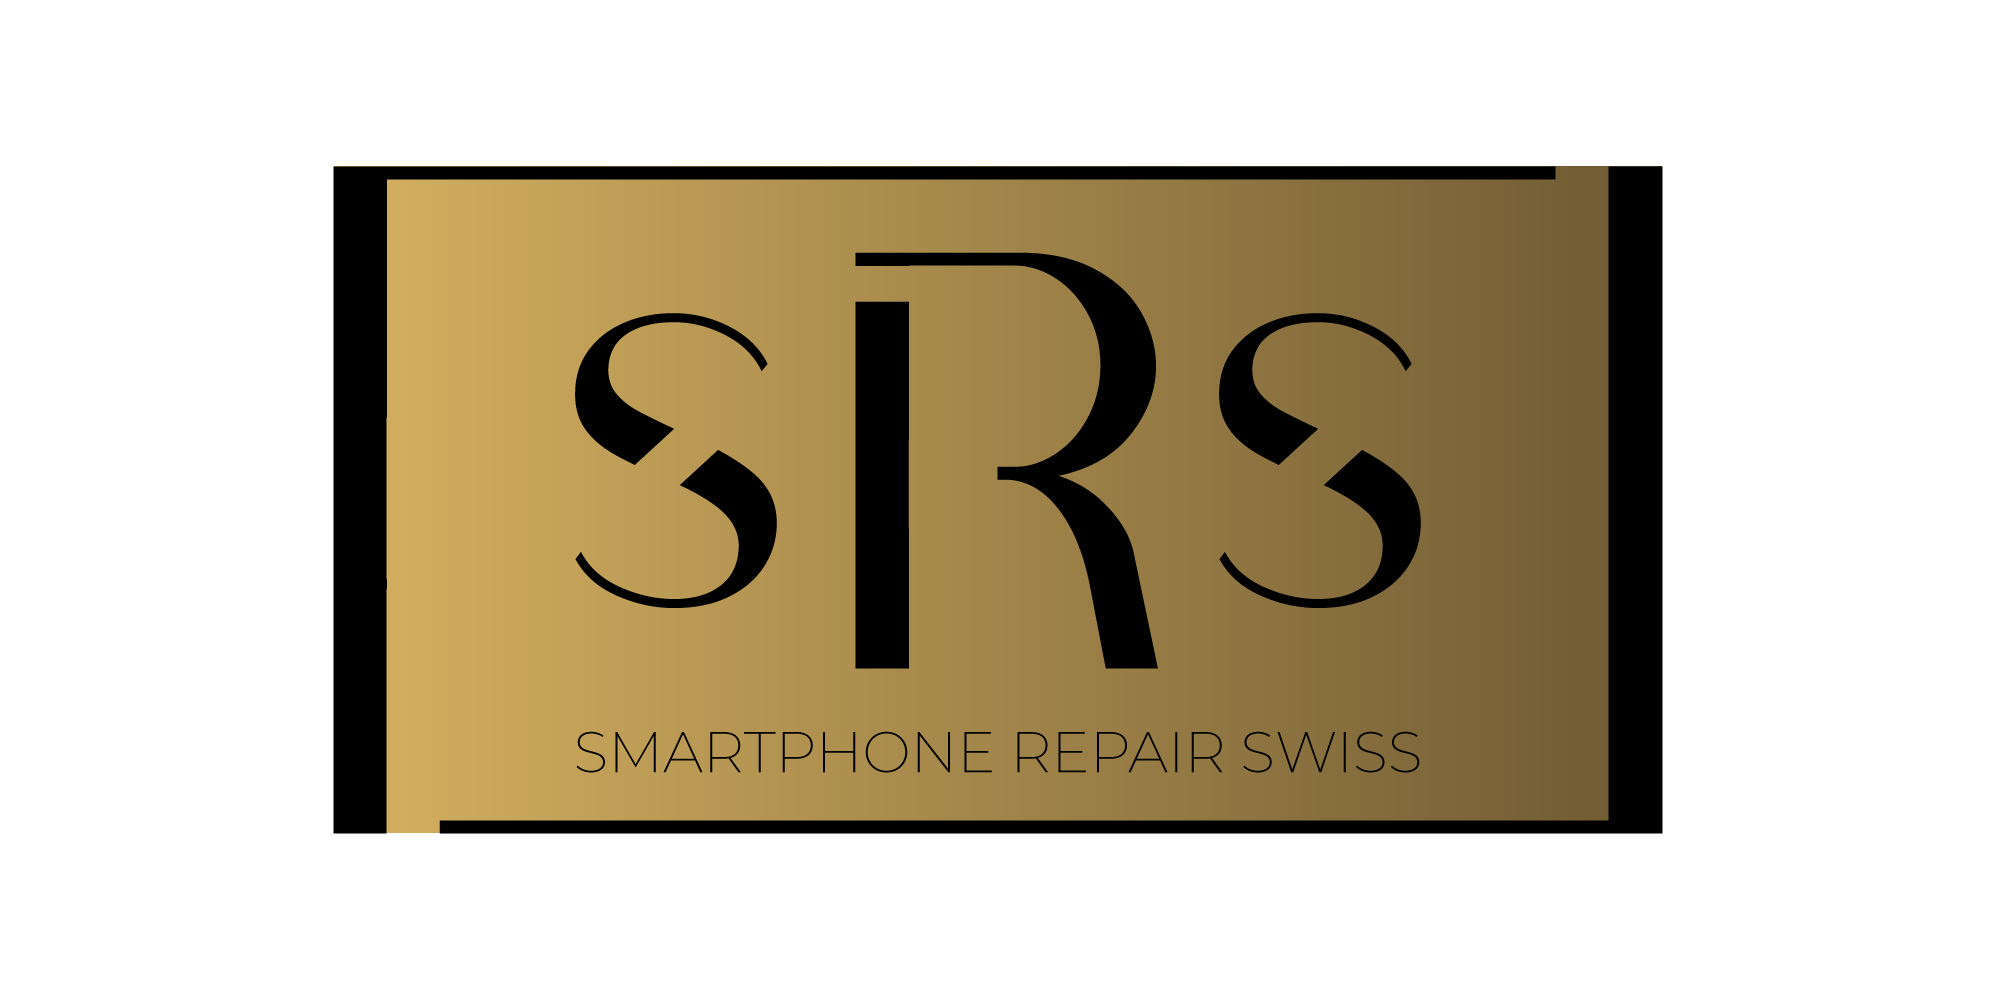 Smartphone Repair Swiss